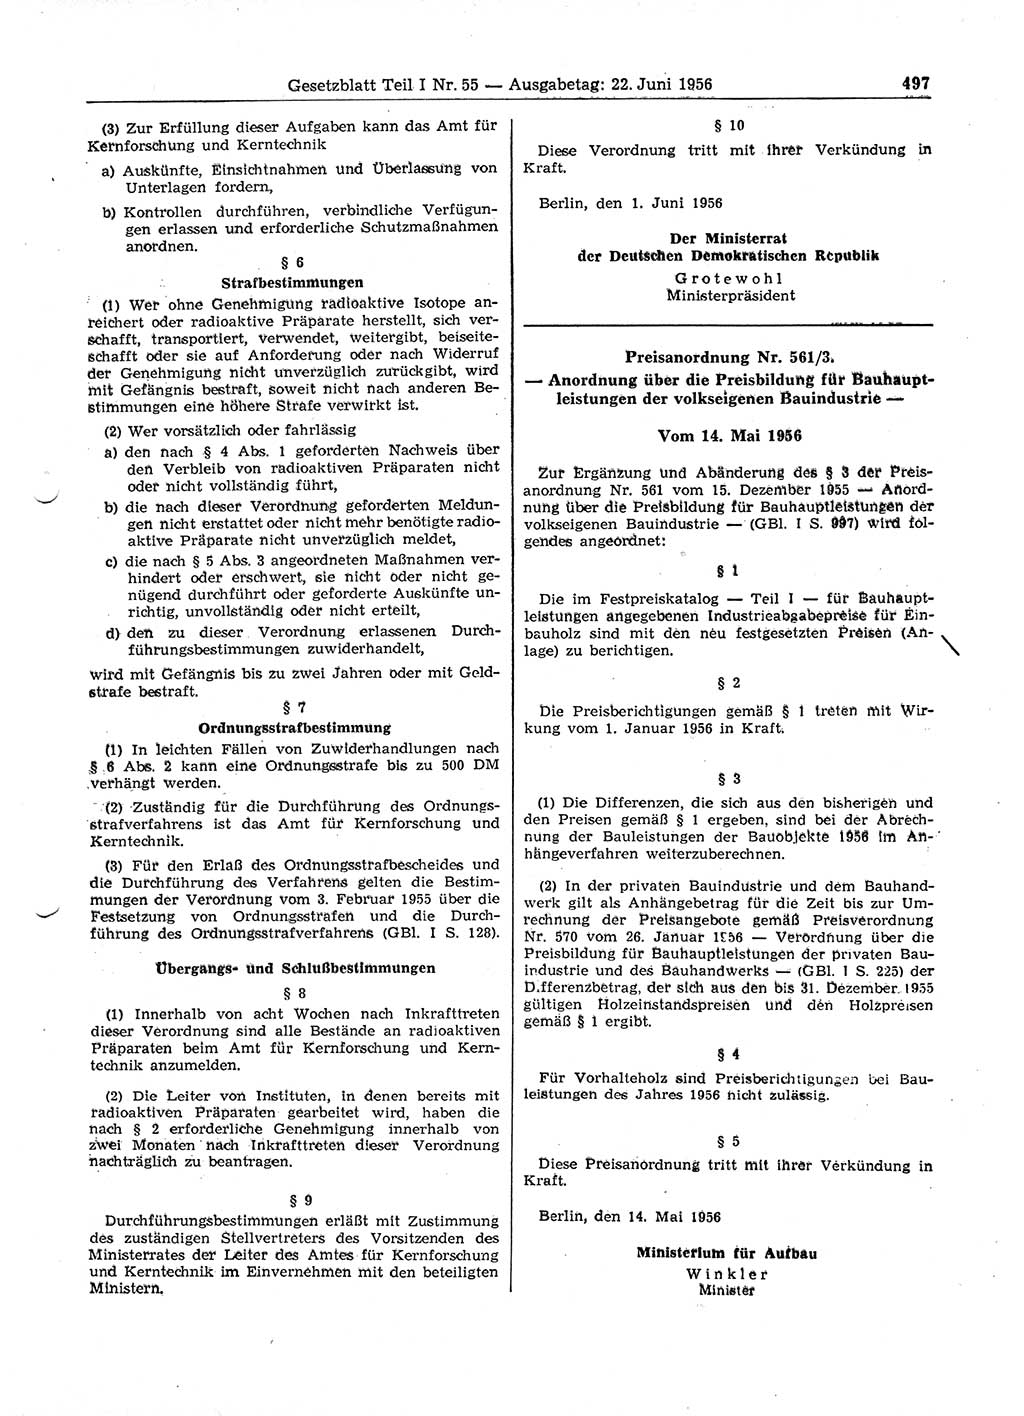 Gesetzblatt (GBl.) der Deutschen Demokratischen Republik (DDR) Teil Ⅰ 1956, Seite 497 (GBl. DDR Ⅰ 1956, S. 497)